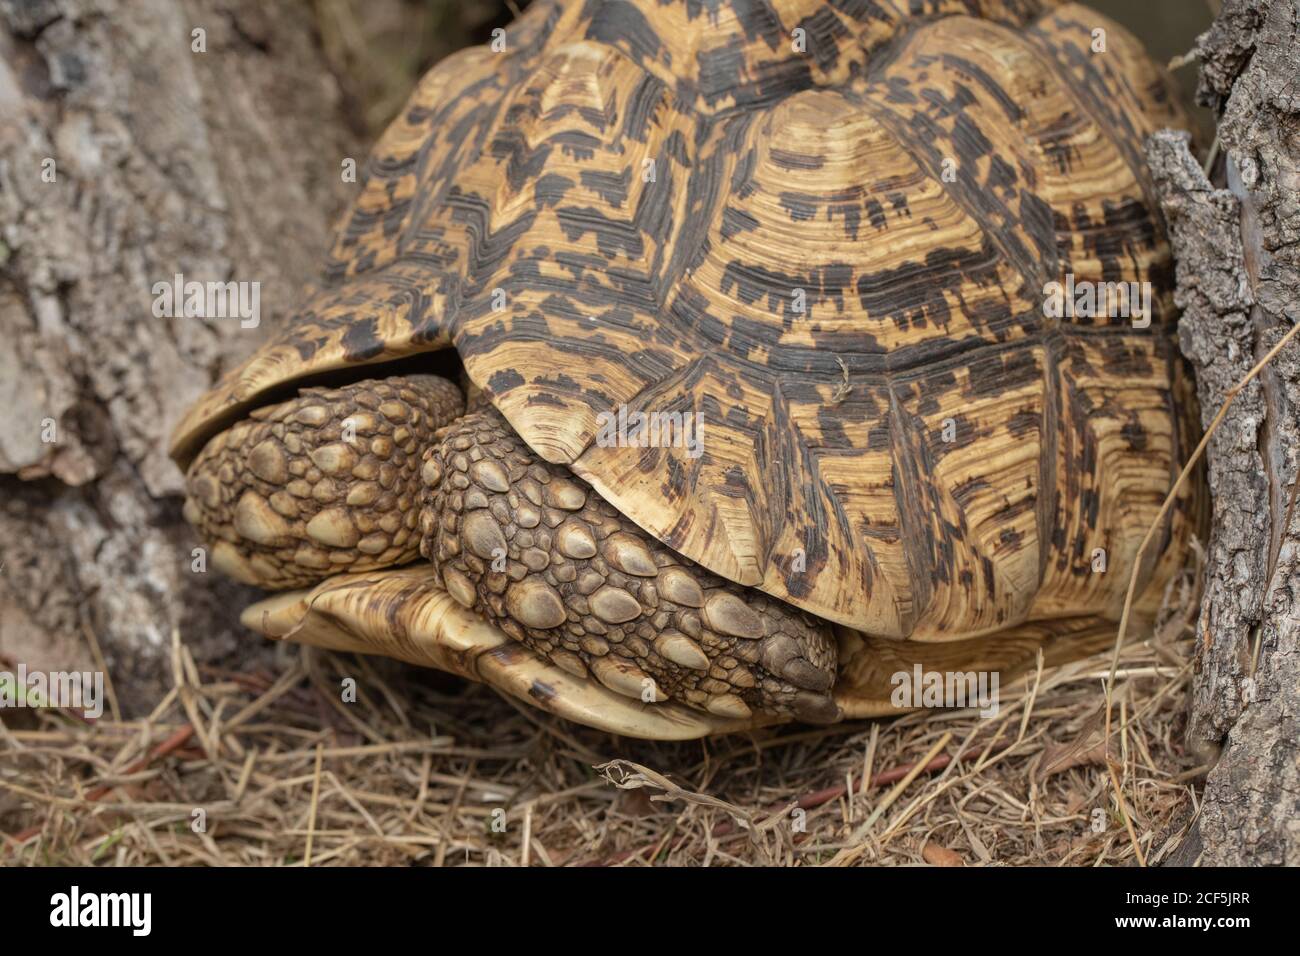 Leopardschildkröte (Stigmochelys pardalis). Kopf vollständig in die Schale zurückgezogen. Vorderbeine, mit großen Schuppen bedeckt, schützen die empfindliche Anatomie im Inneren Stockfoto